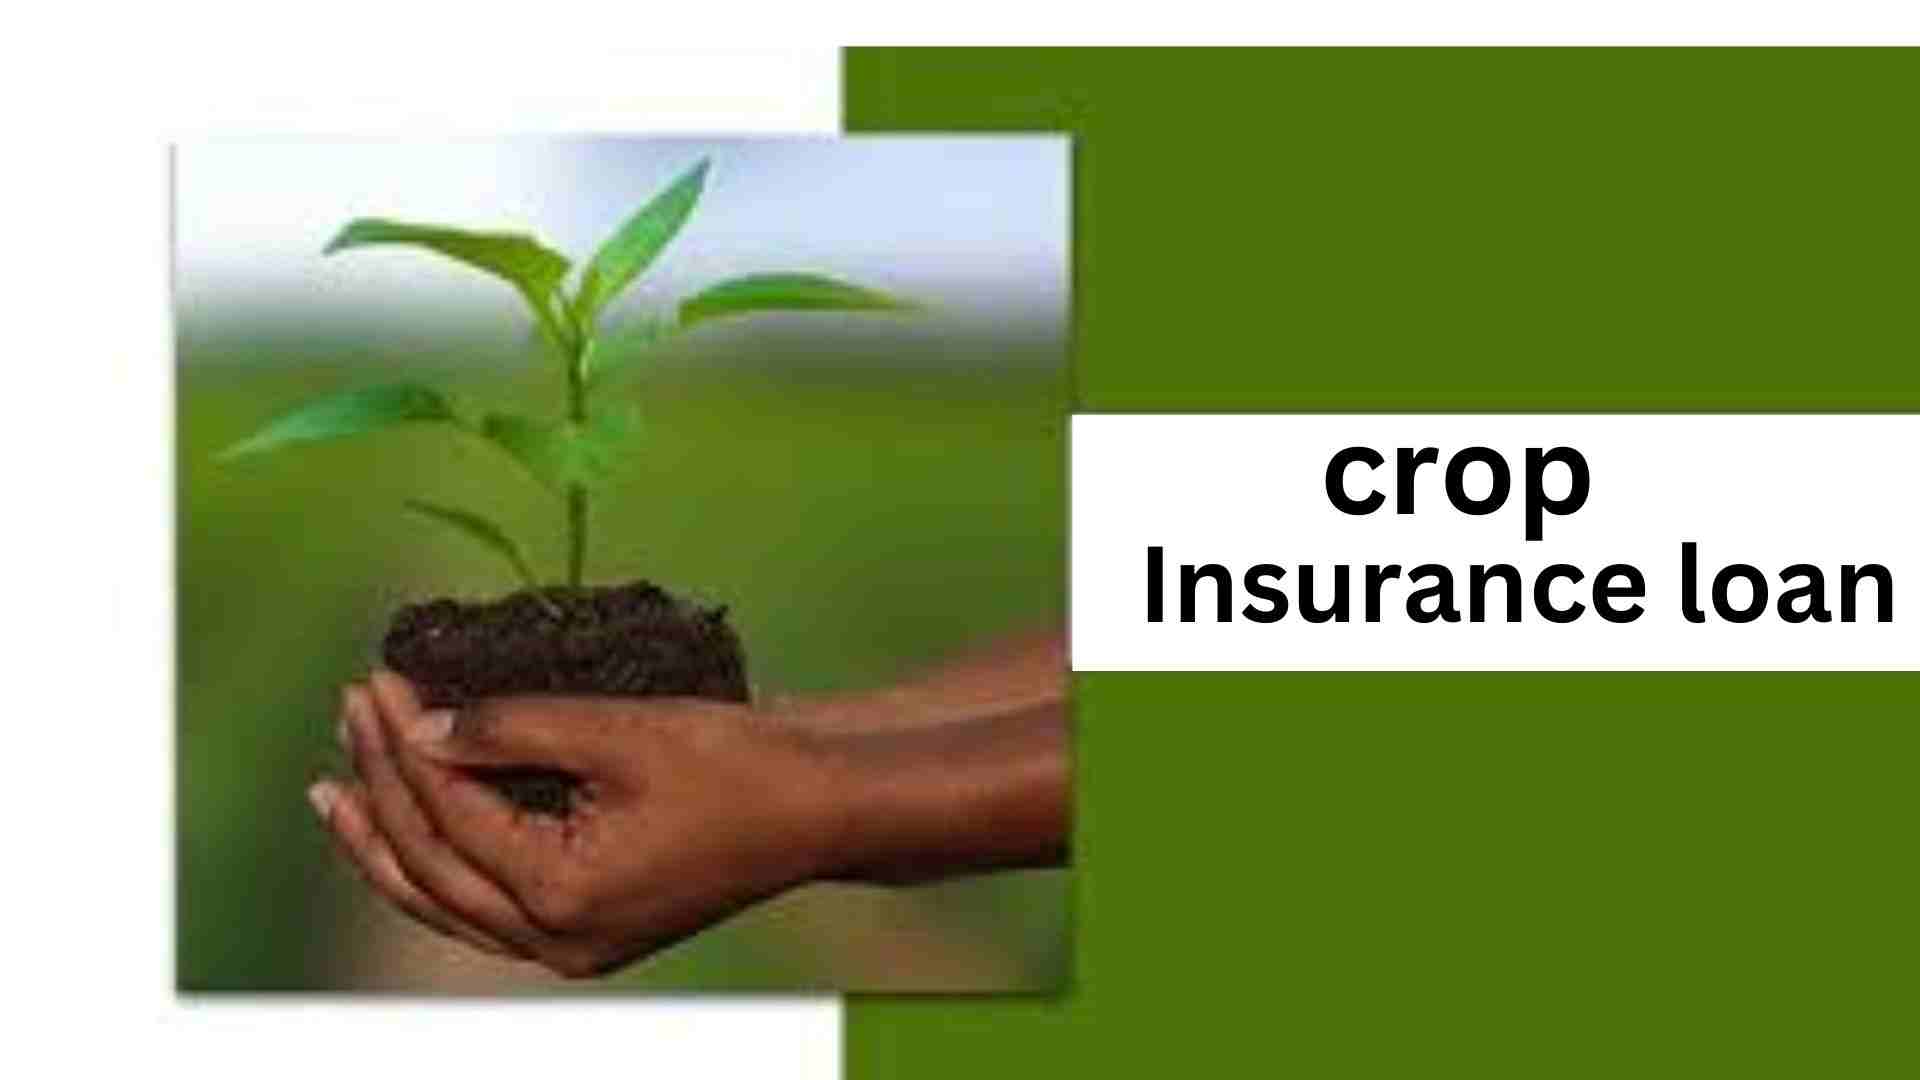 Crop Insurance loan